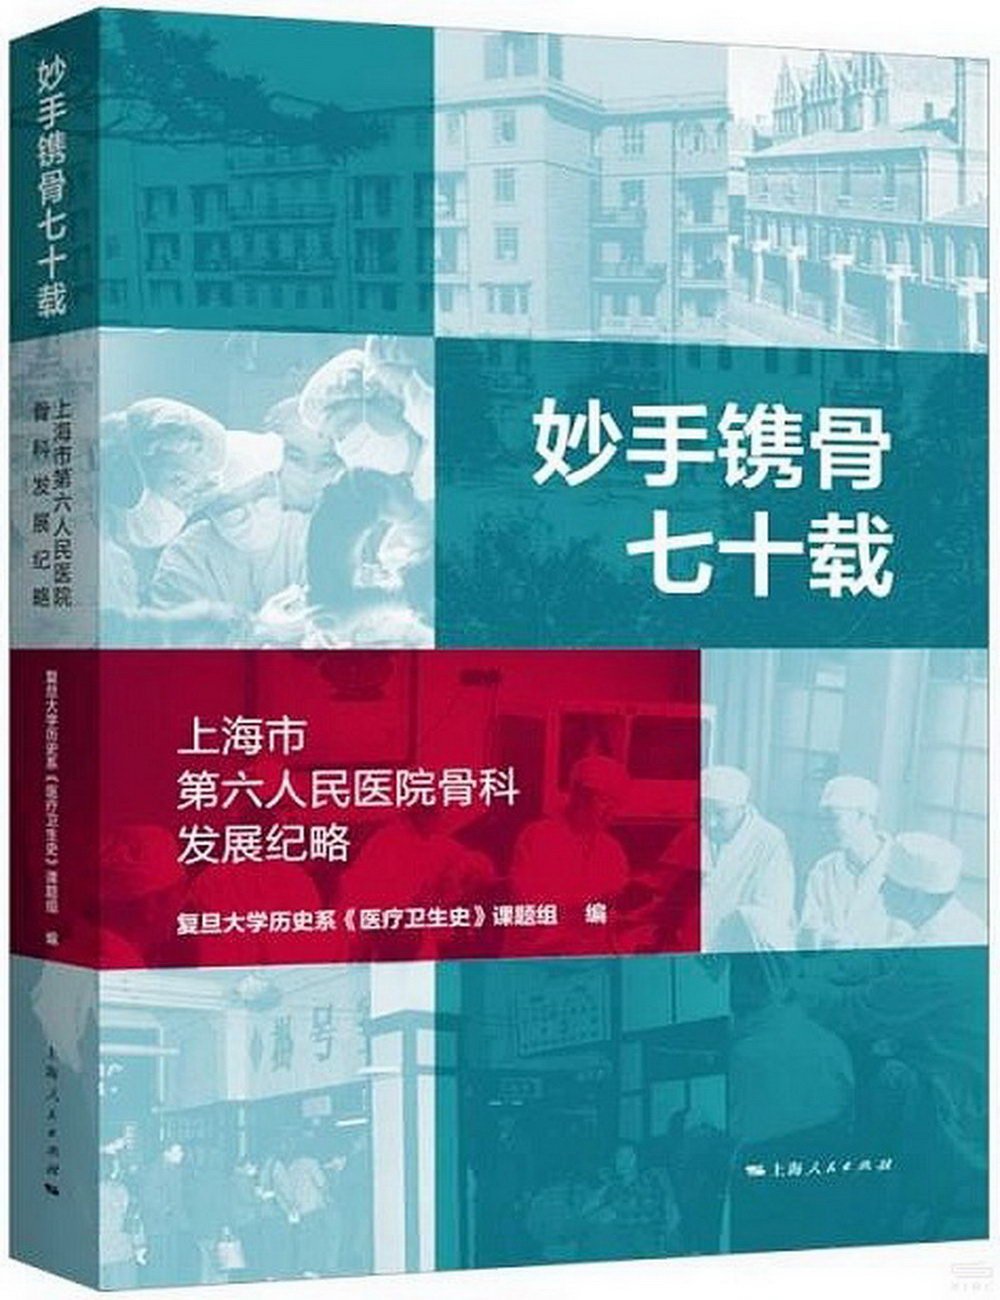 妙手鐫骨七十載：上海市第六人民醫院骨科發展紀略